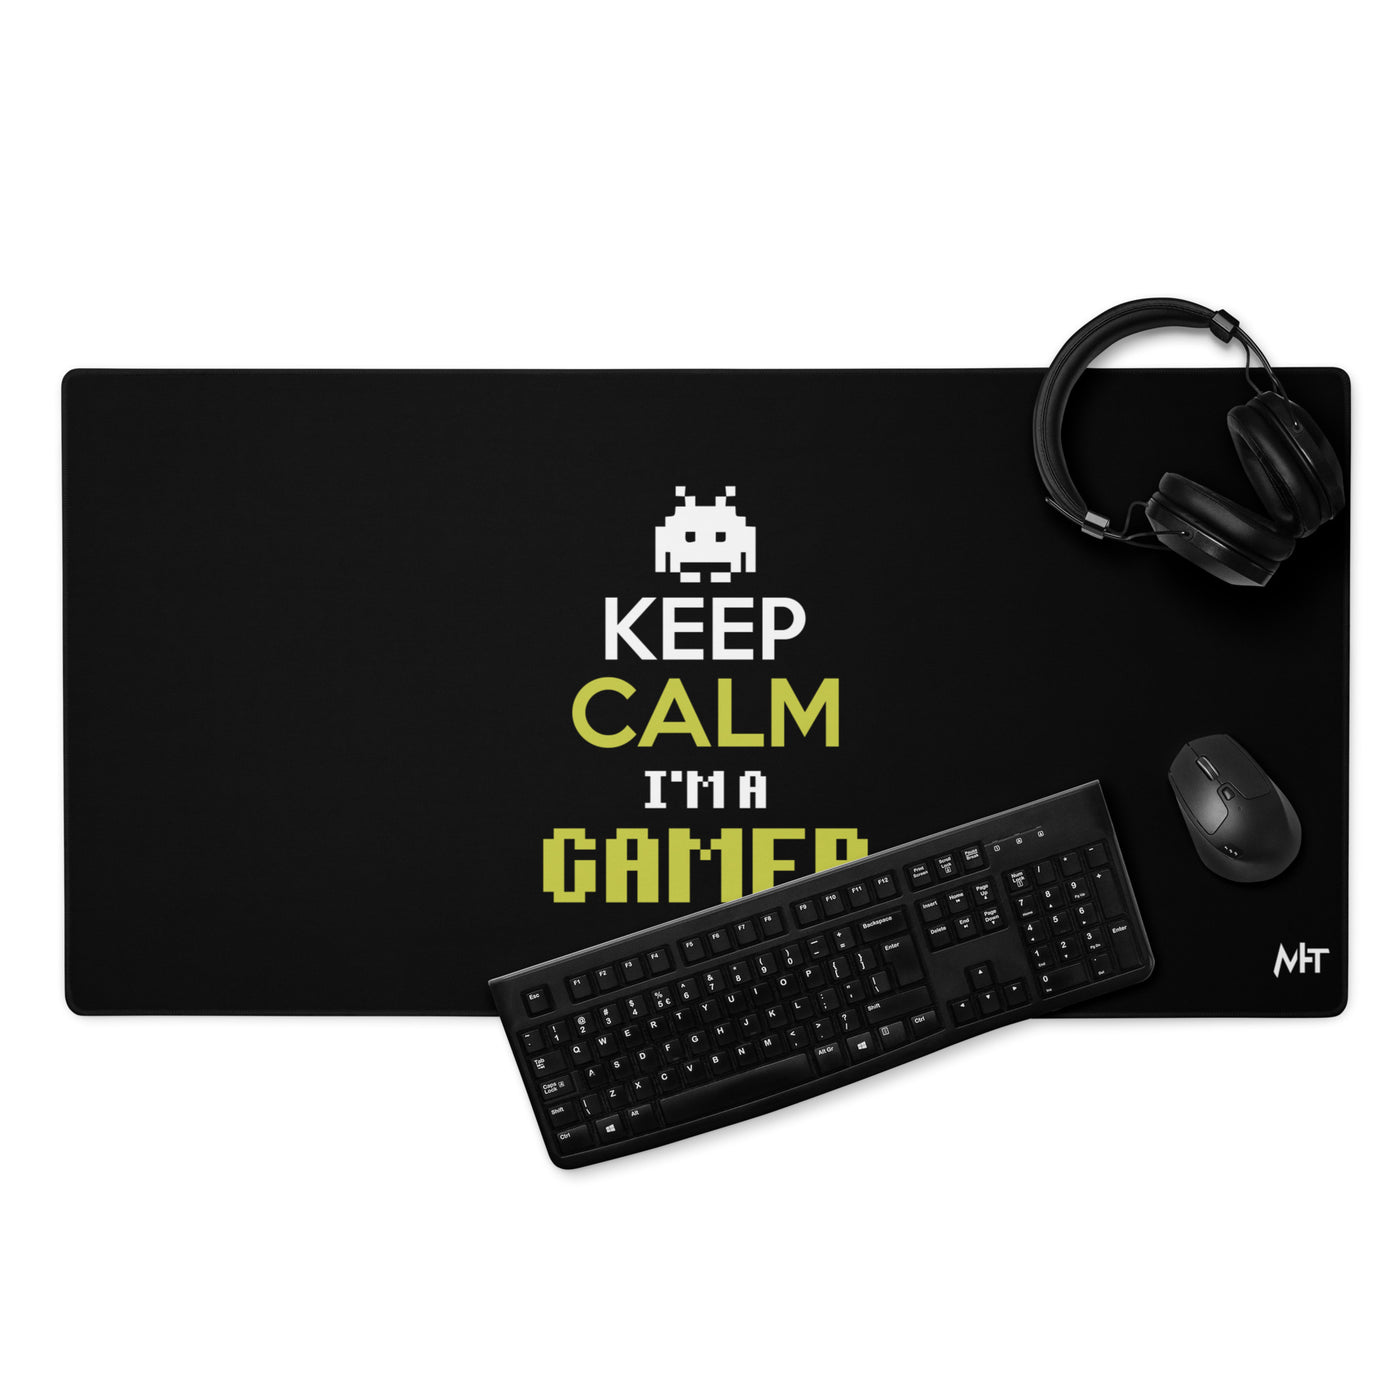 Keep Calm and I am a Gamer - Desk Mat